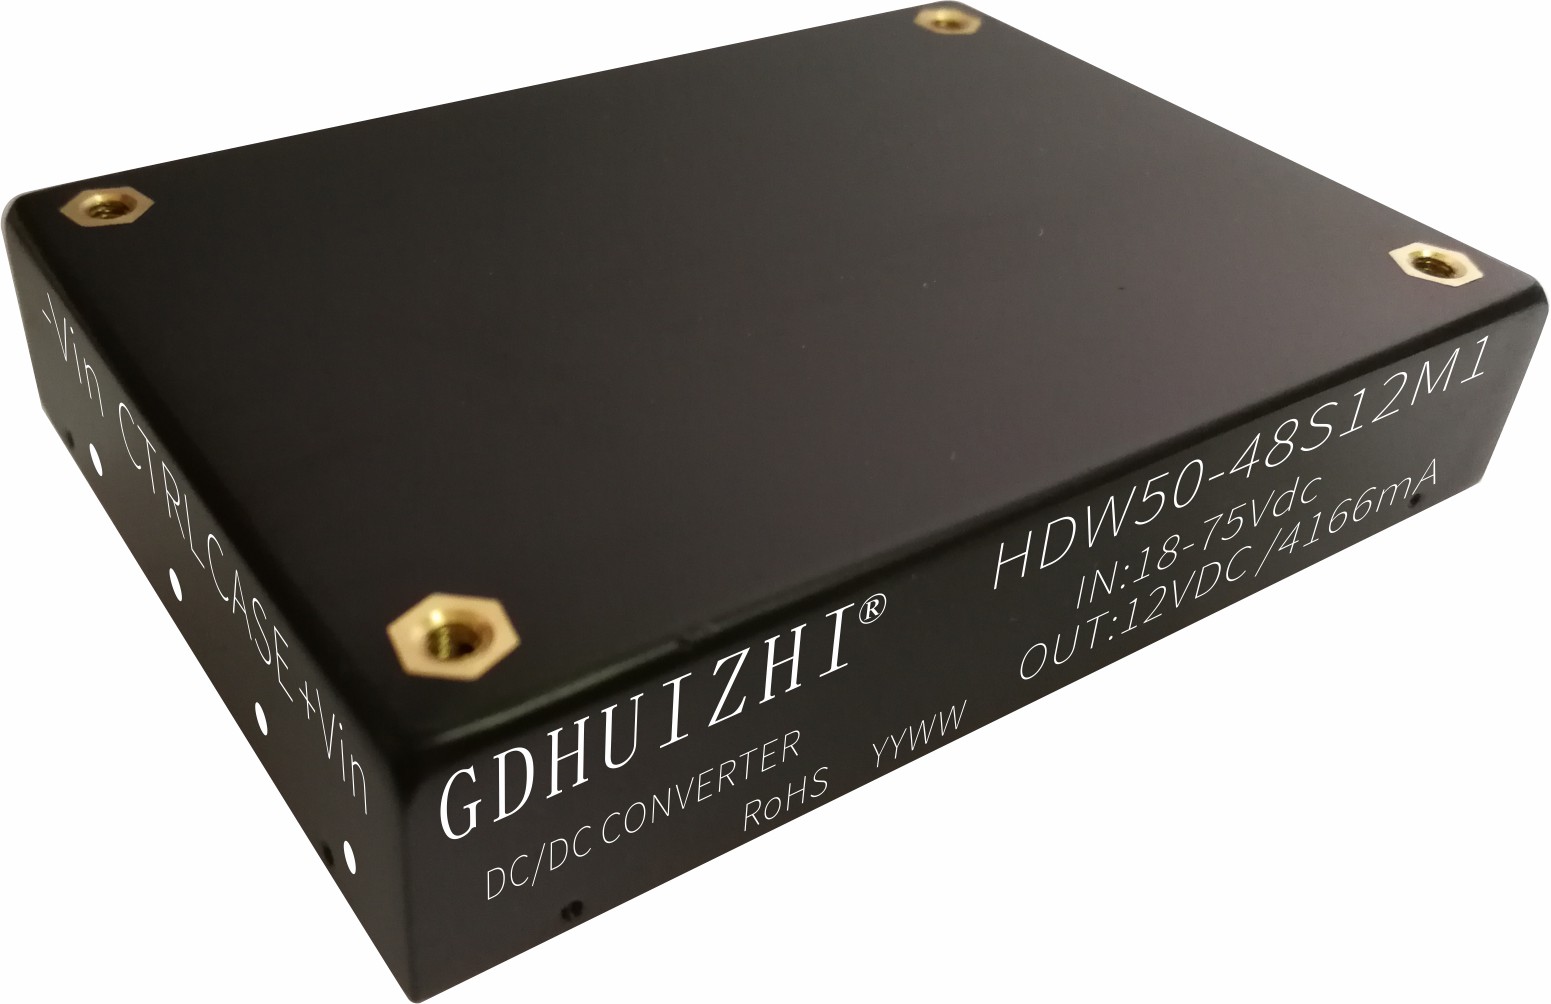 HDW50-48S12M1